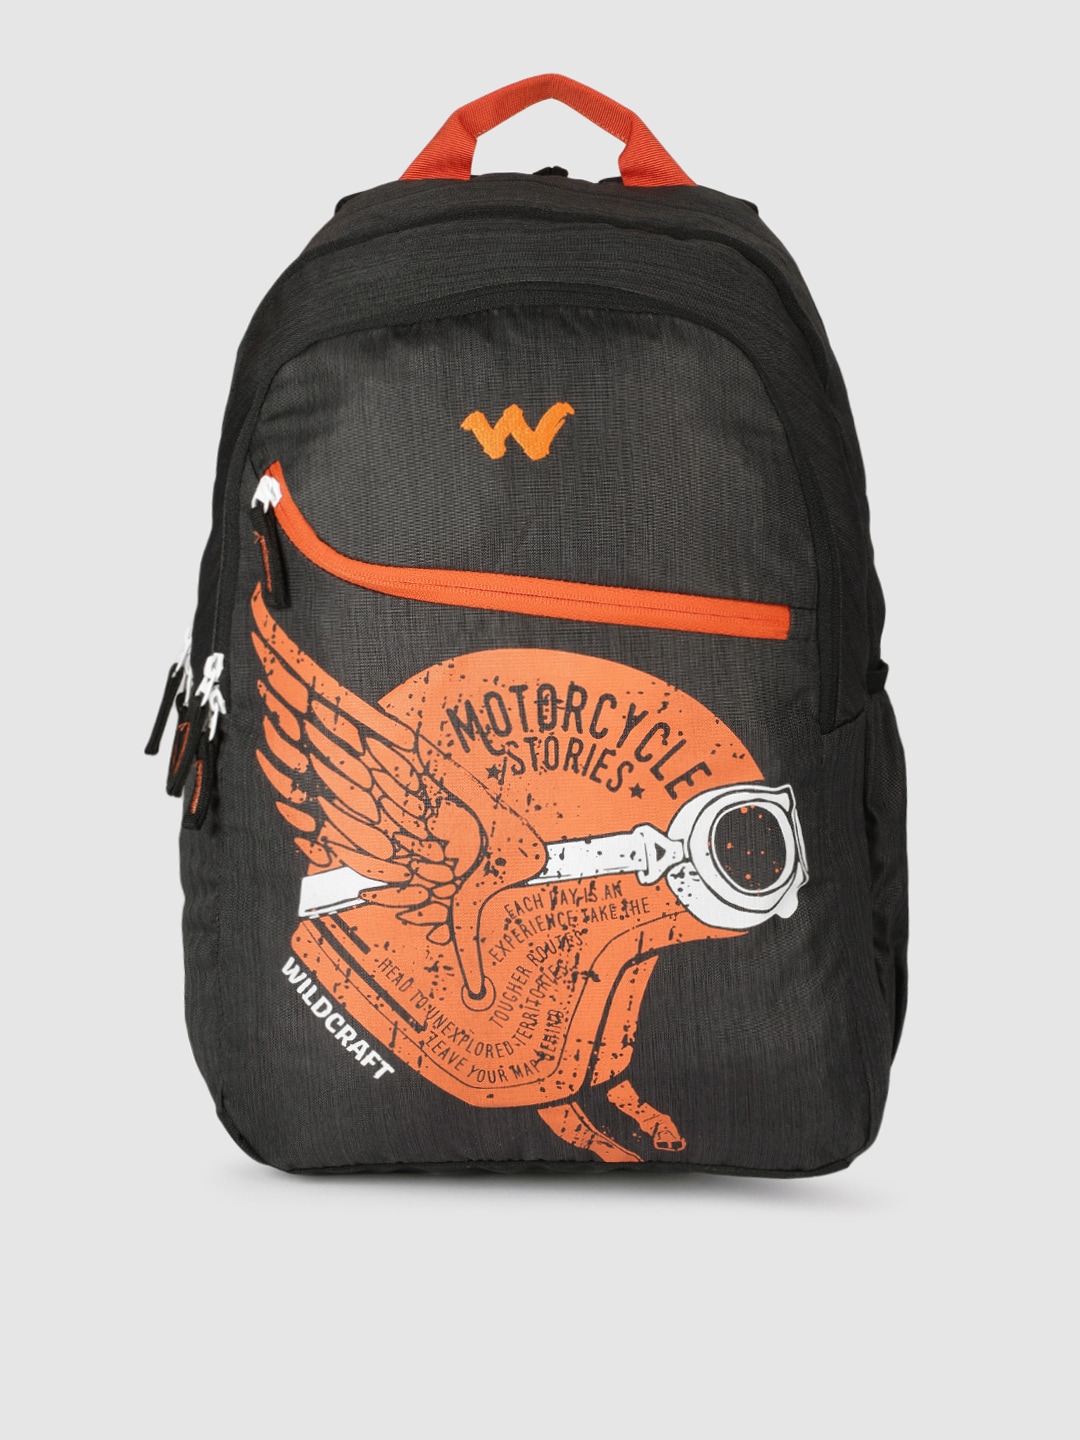 Wildcraft Unisex Black & Orange Printed Backpack Price in India